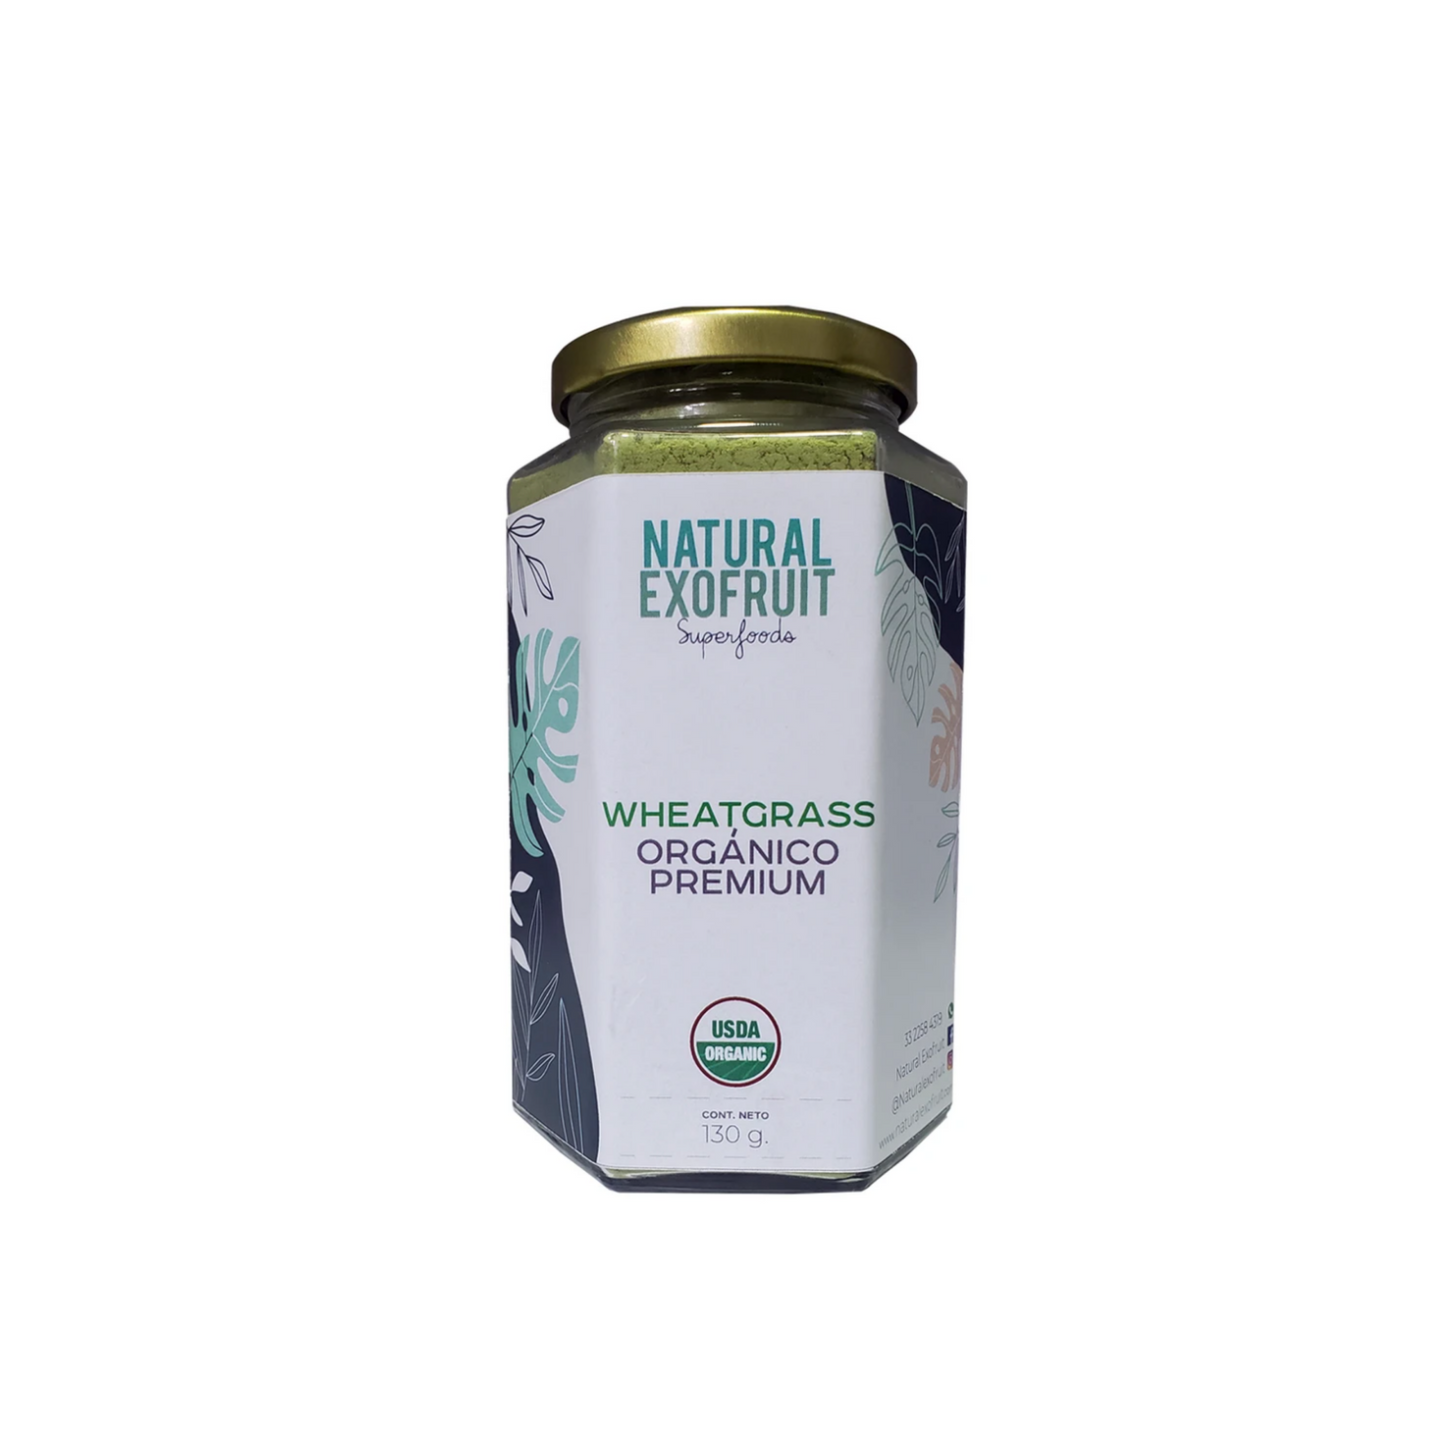 WheatGrass Orgánico Premium. Natural Exofruit